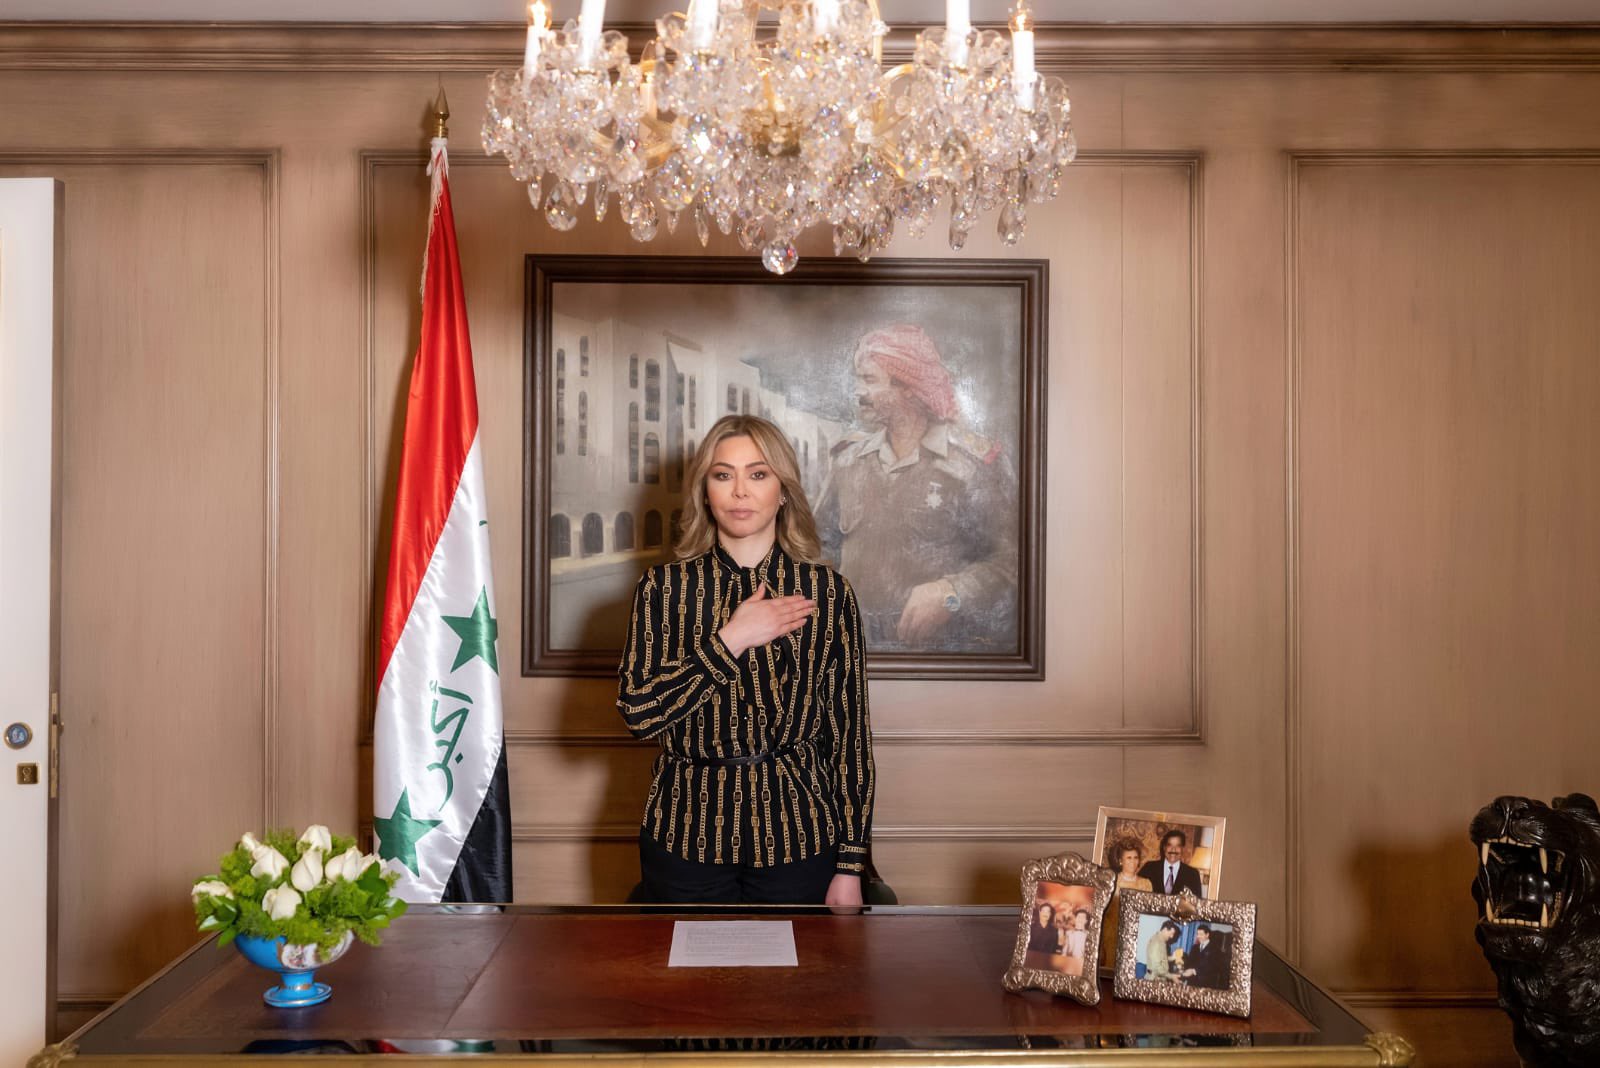 رغد إبنة الرئيس العراقي الأسبق صدام حسين تقف الأربعاء 28 كانون الأول\ ديسمبر 2022 دقيقة حداد على روح والدها مع قرب حلول الذكرى 16 لإعدامه في 30 كانون الأول\ ديسمبر عام 2006 (تويتر)